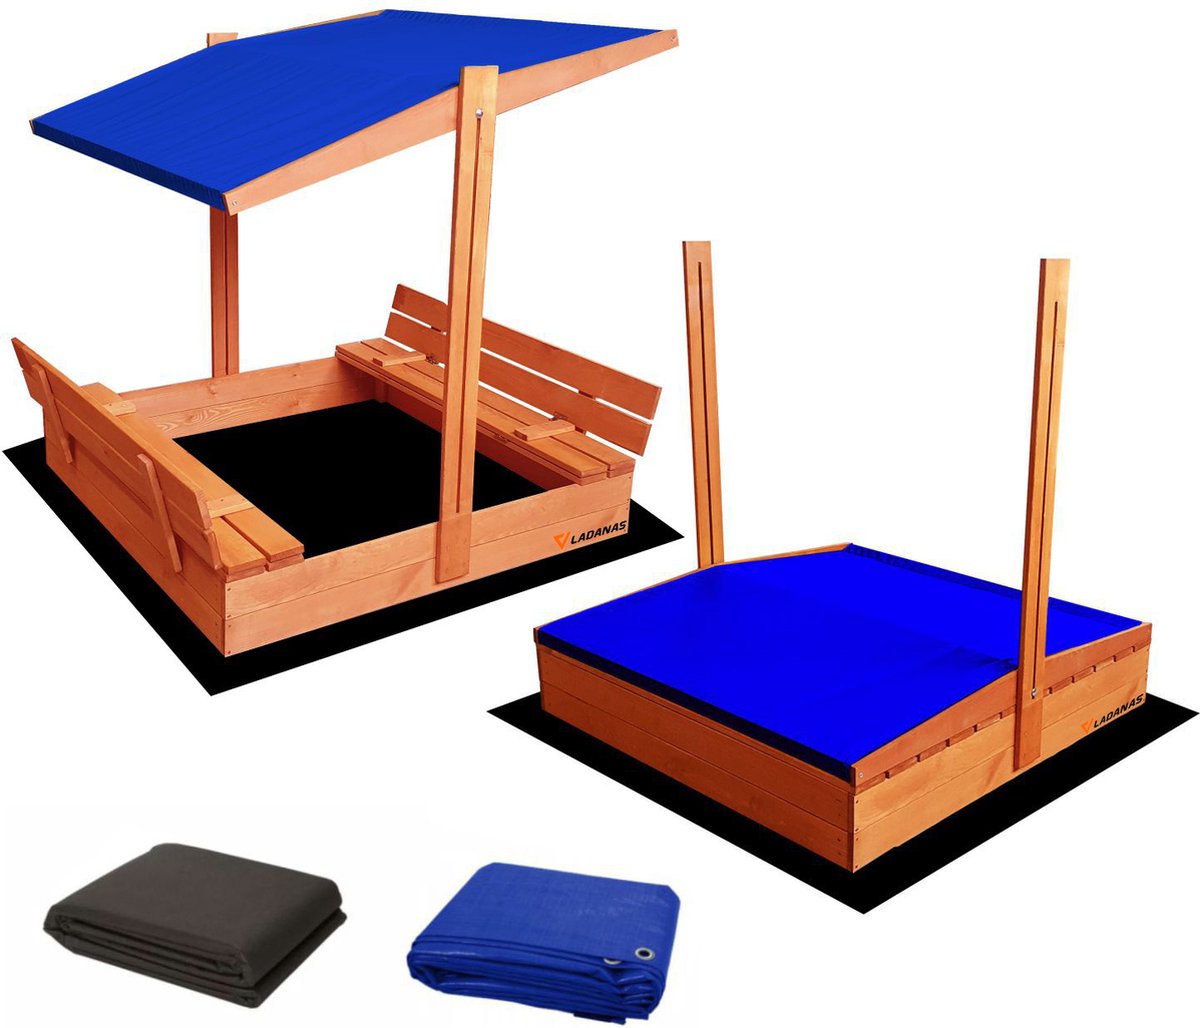 Ladanas® AFSLUITBARE zandbak met dak en banken incl. dekzeil + gronddoek - 120x120cm - GEIMPREGNEERD hout - blauw